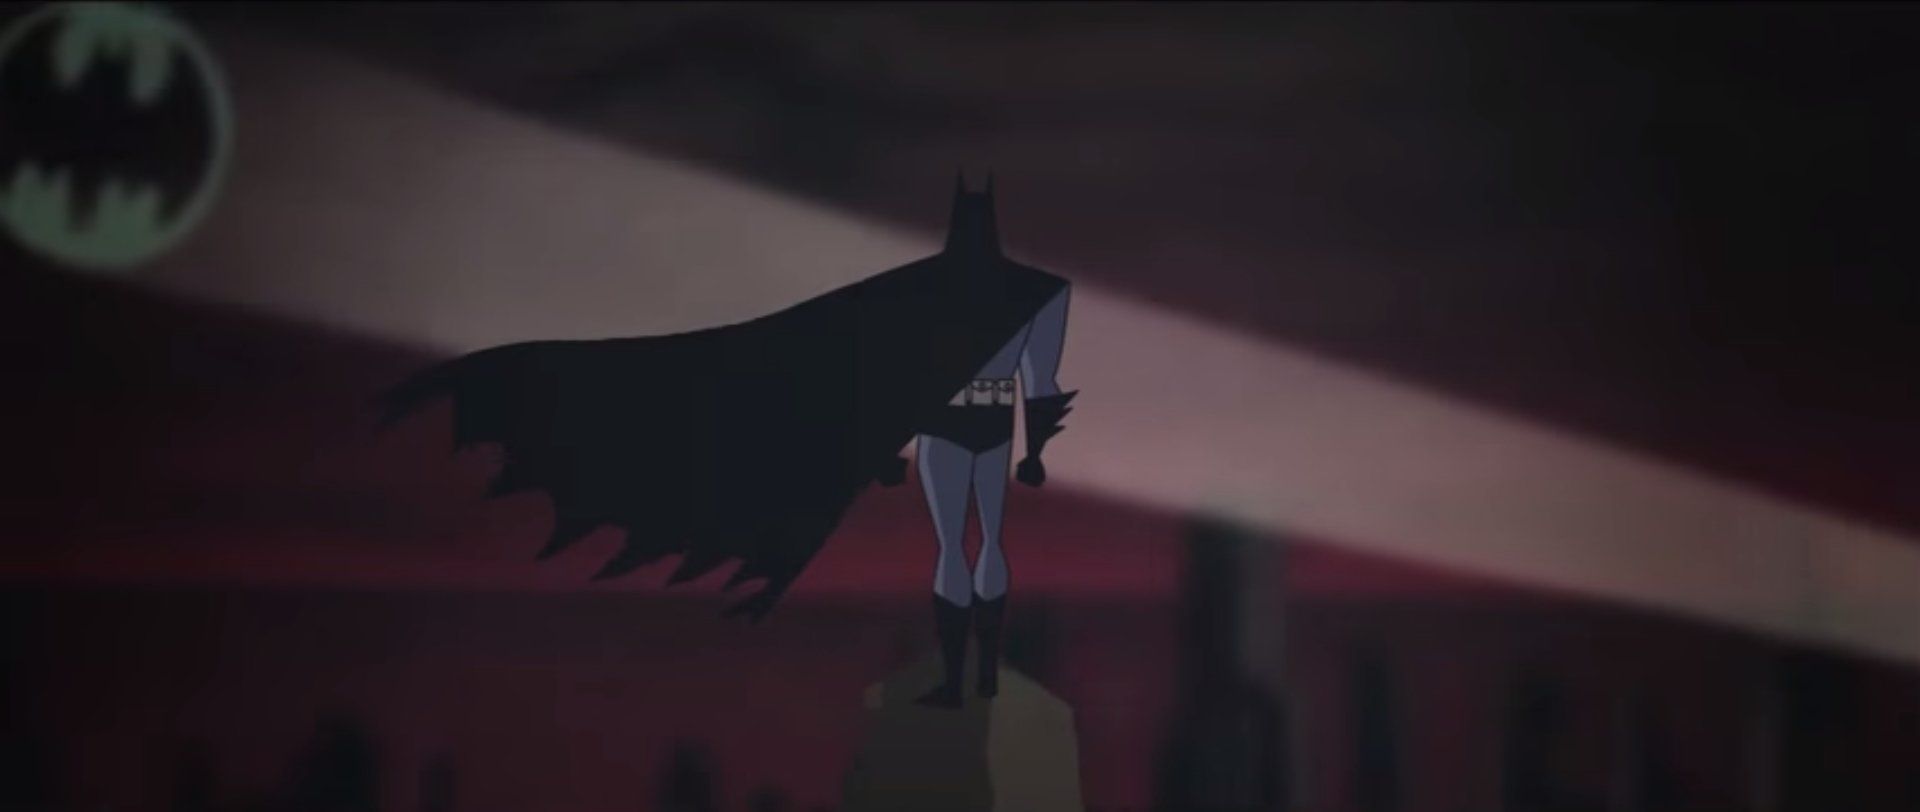 Le trailer de Batman V Superman en version série animée #2